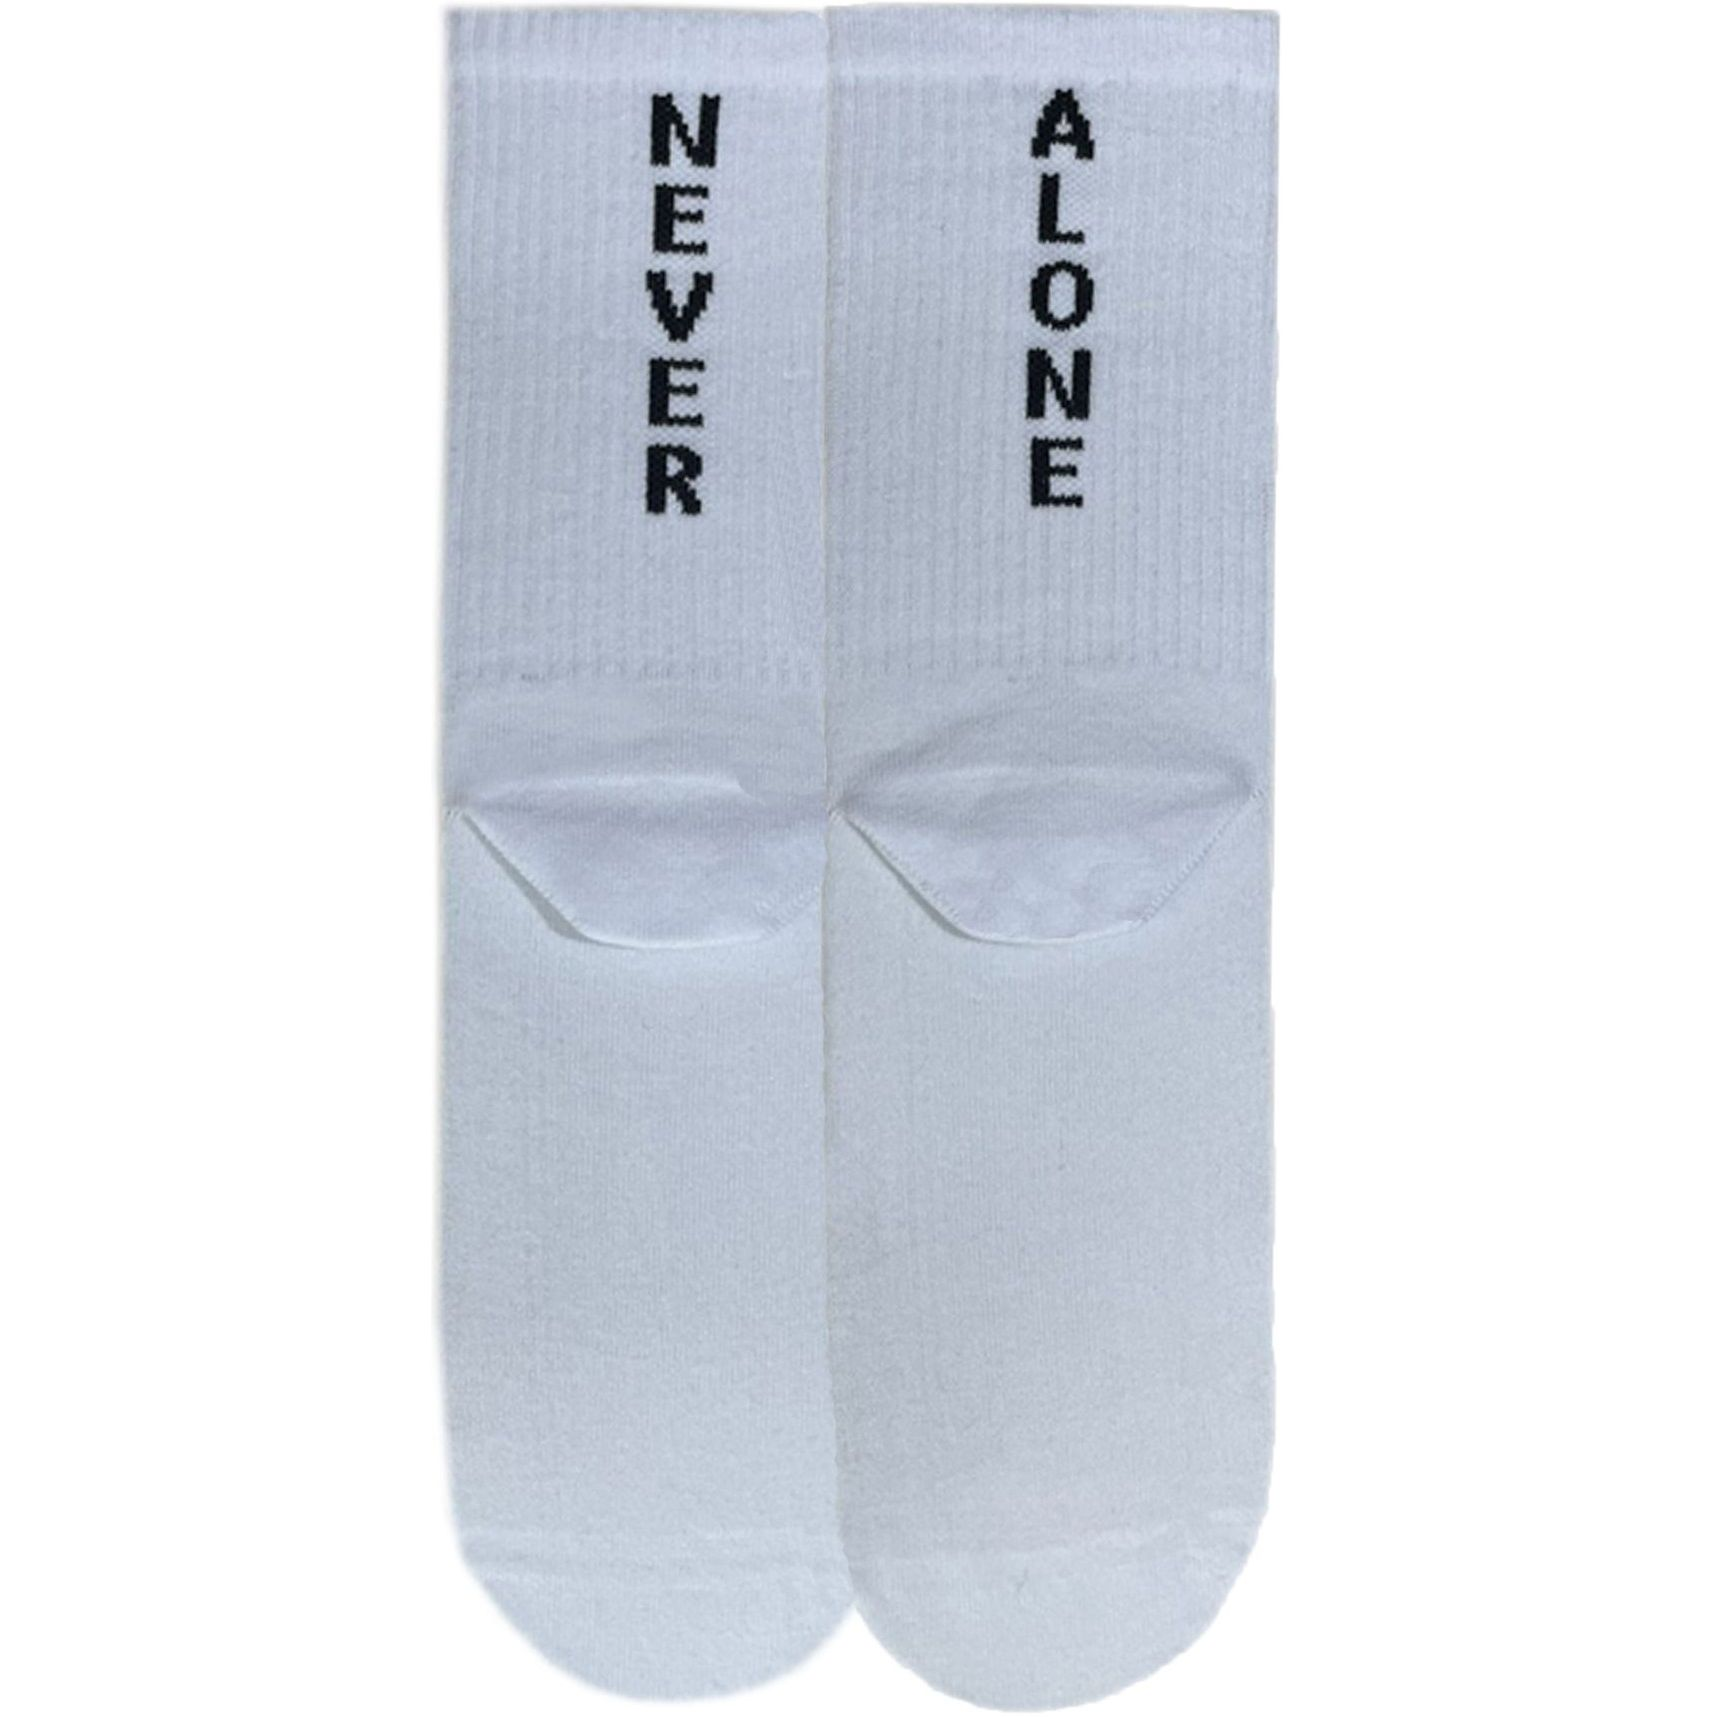 Носки мужские Premier Socks 42-43 1 пара белые с принтом (4820163317922) фото 1